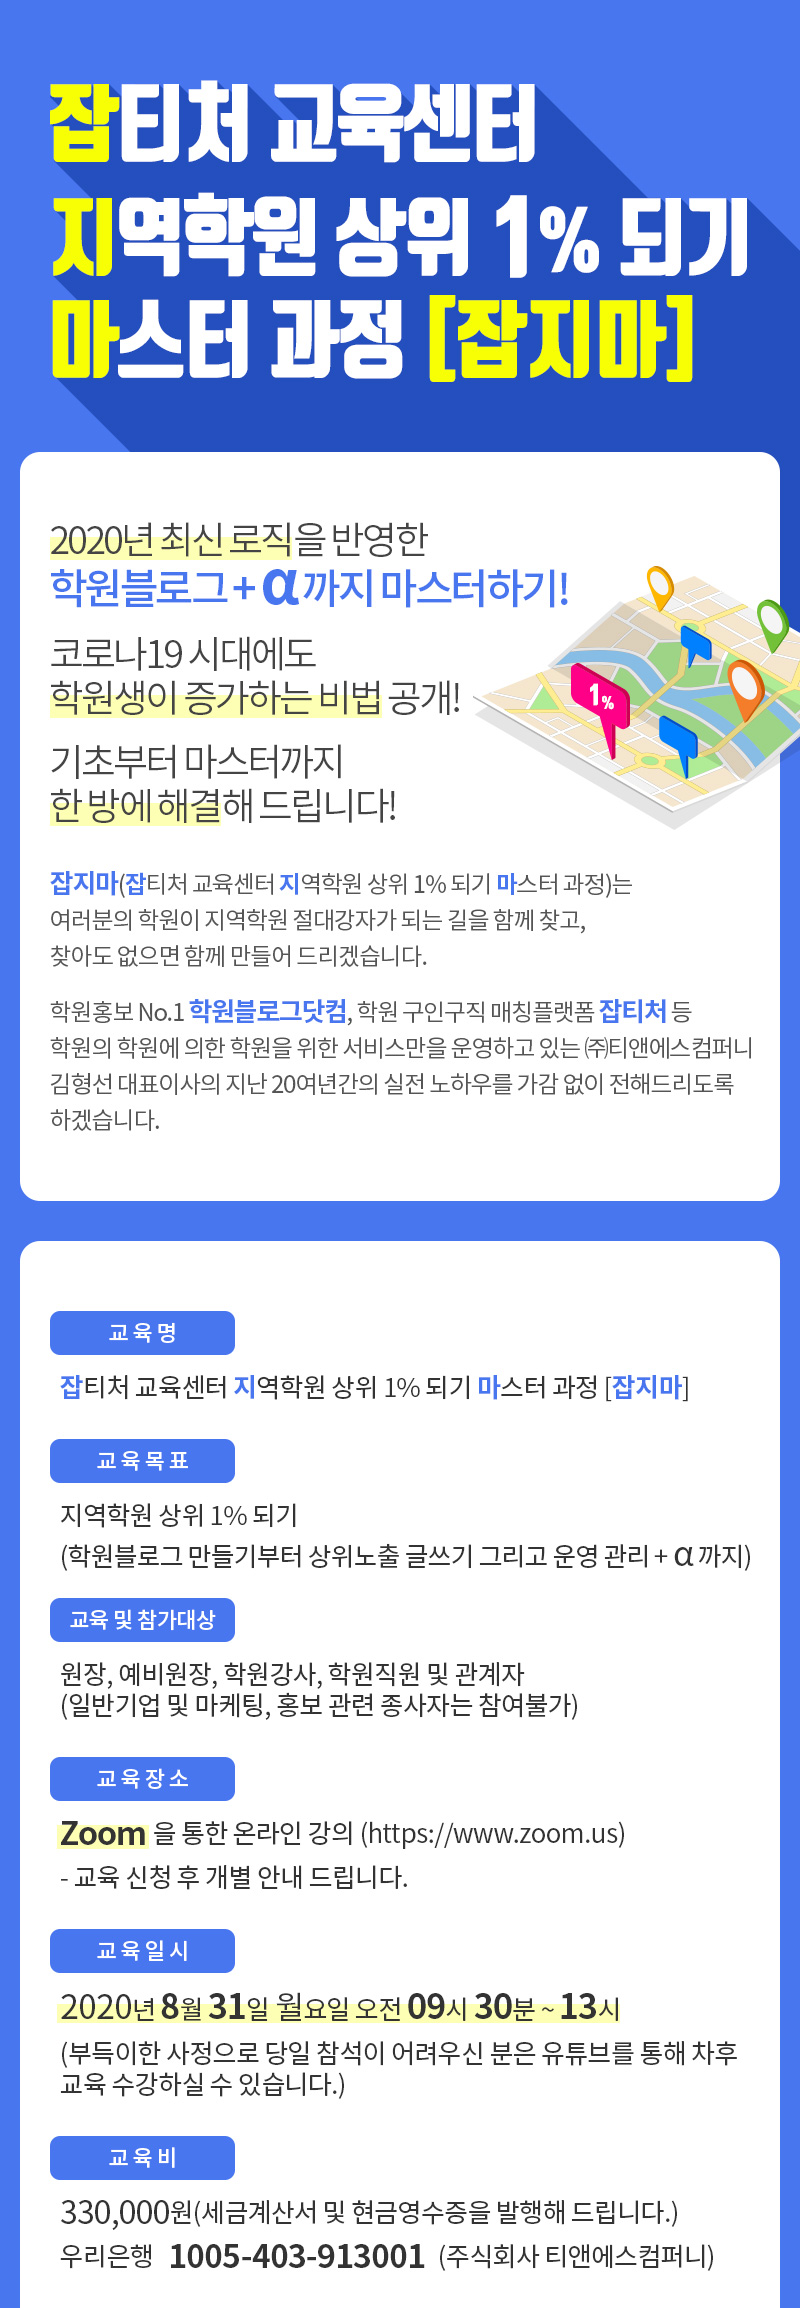 잡티처 교육센터 지역학원 상위 1% 되기 마스터 과정[잡지마]